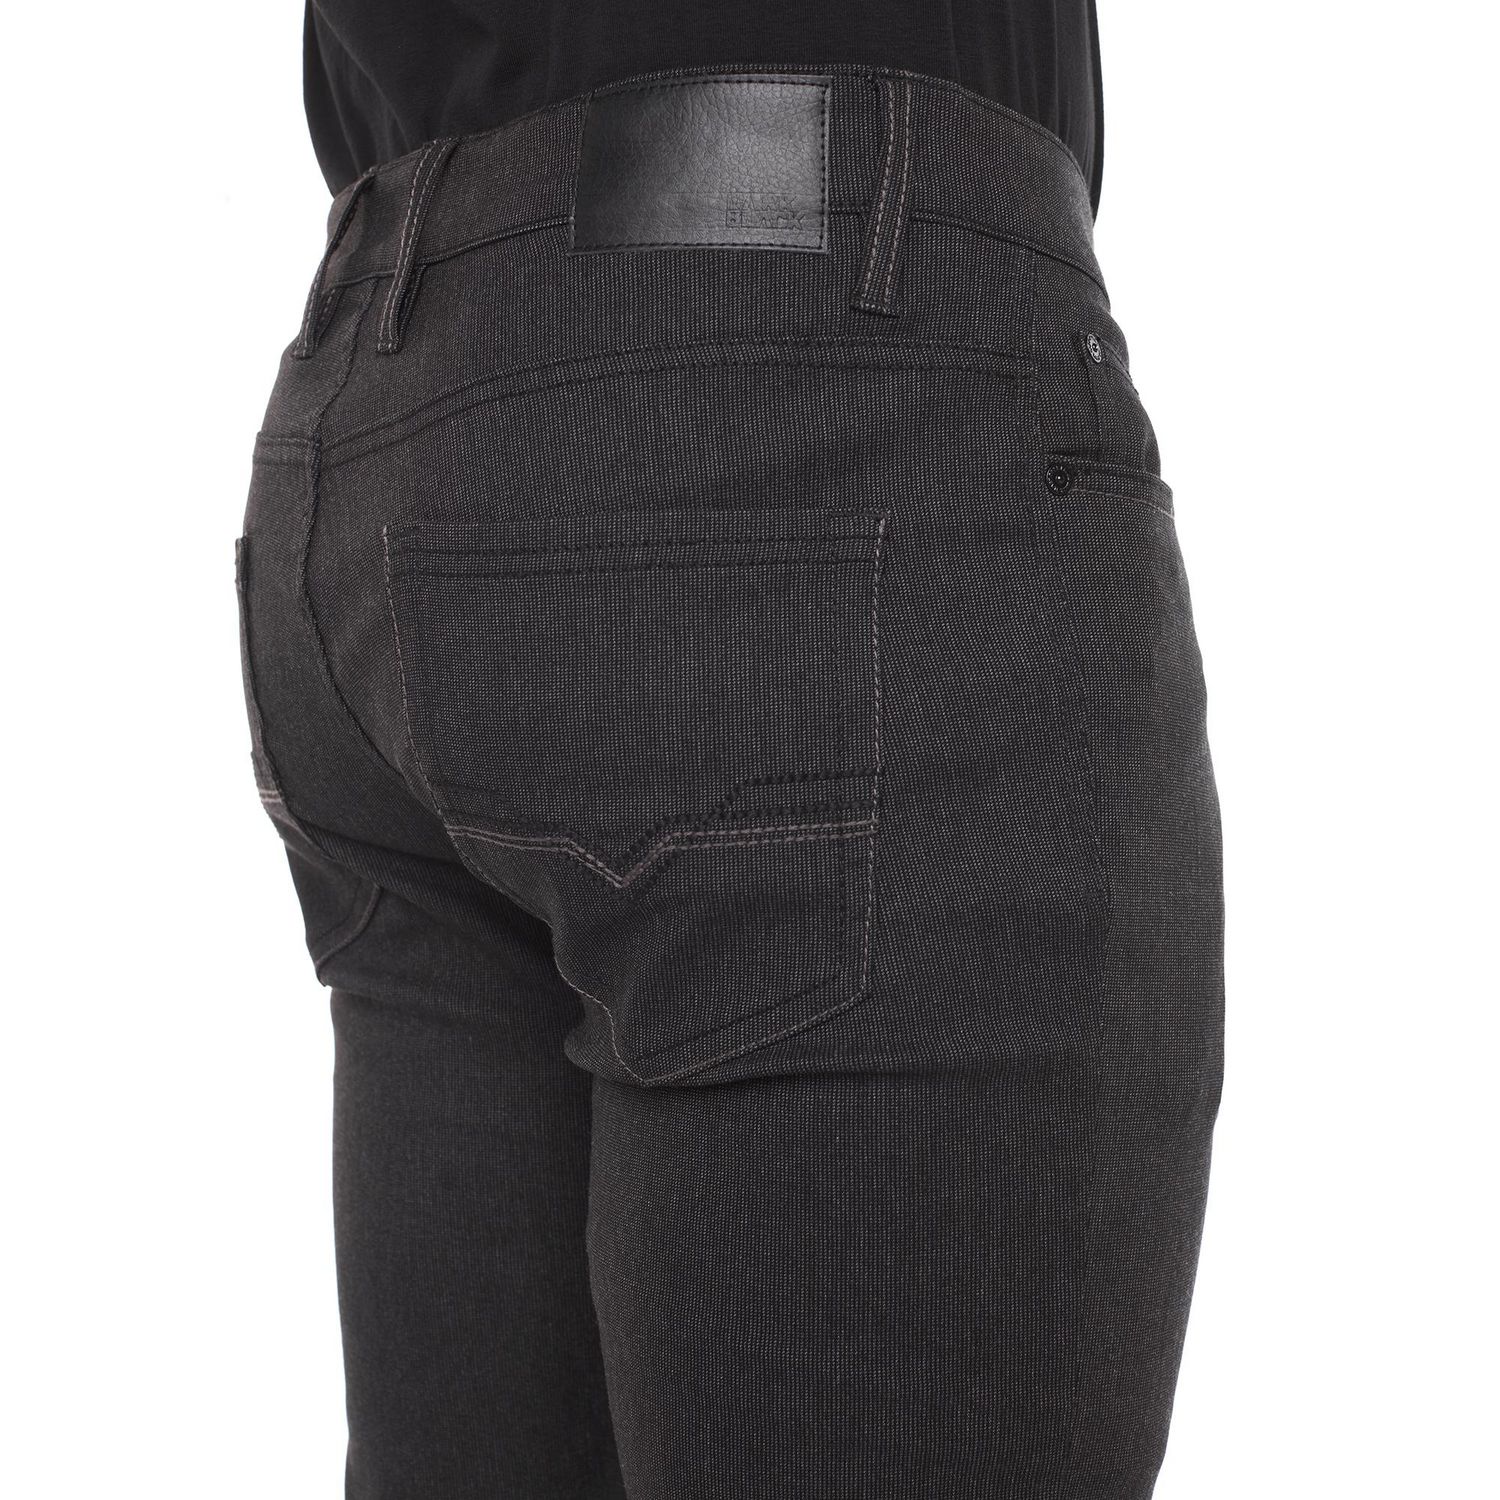 Dark Black Men's 5 Pocket Comfort Stretch Pant 